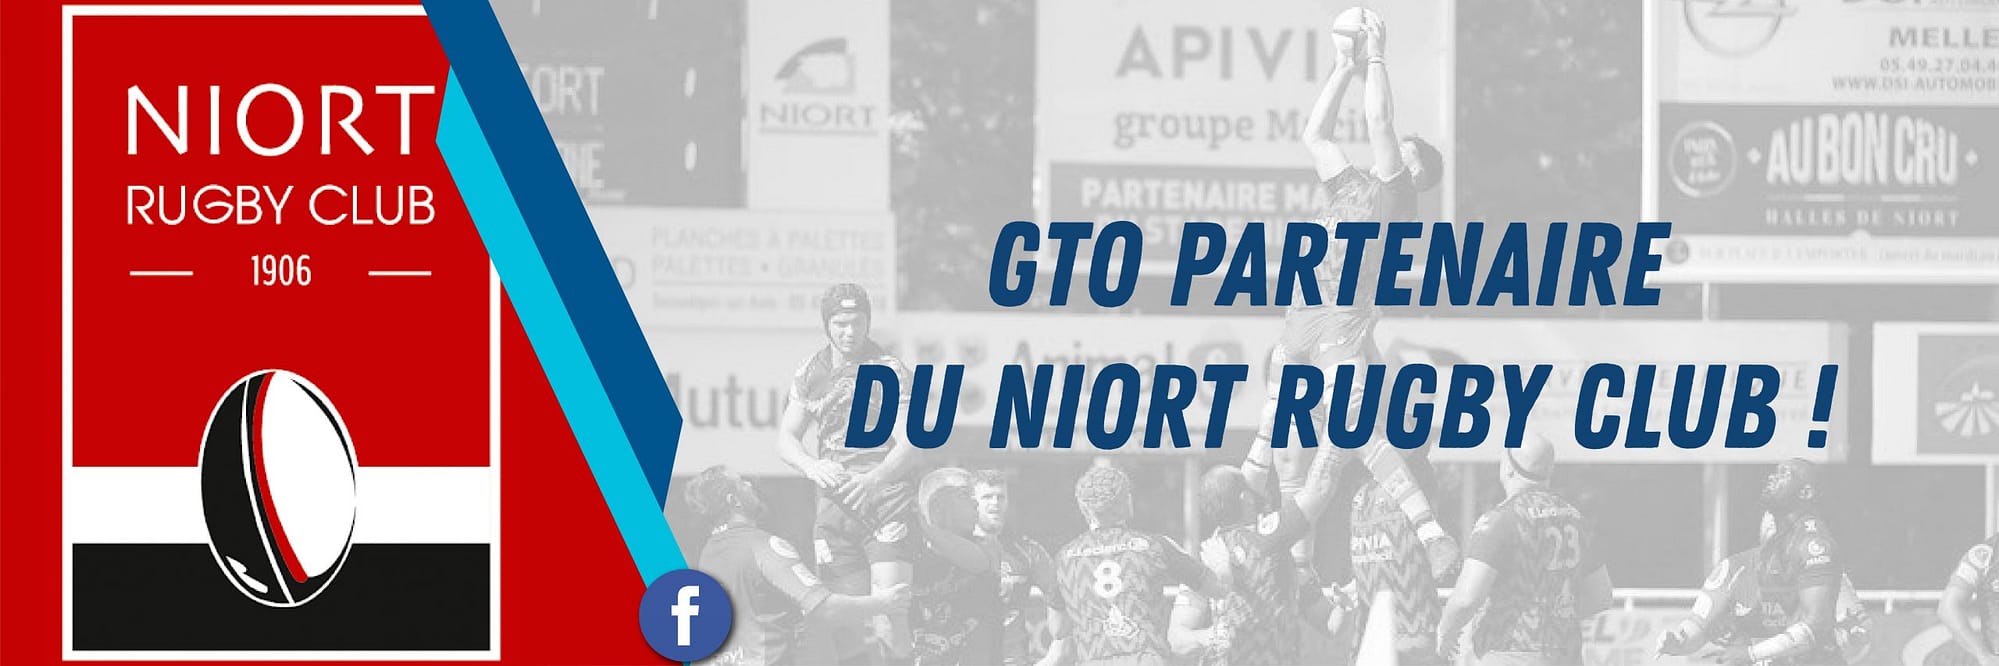 Le Niort Rugby Club partenariat